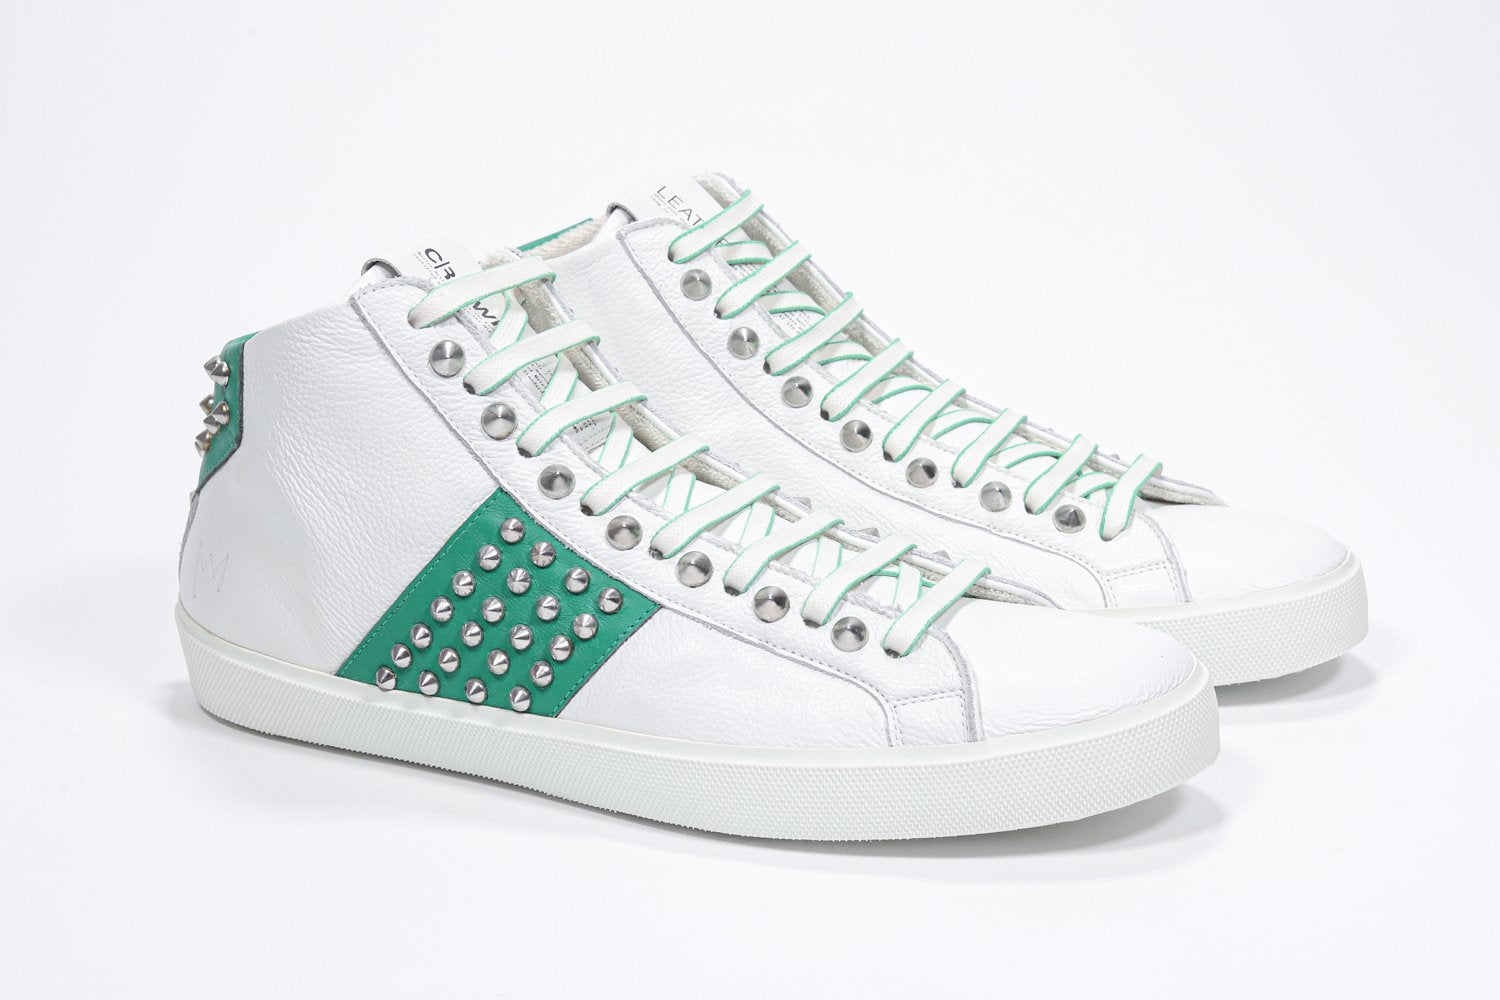 Vue de trois quarts de l'avant de la chaussure blanche et verte de milieu de gamme sneaker. Tige en cuir avec clous, fermeture à glissière interne et semelle en caoutchouc blanc.